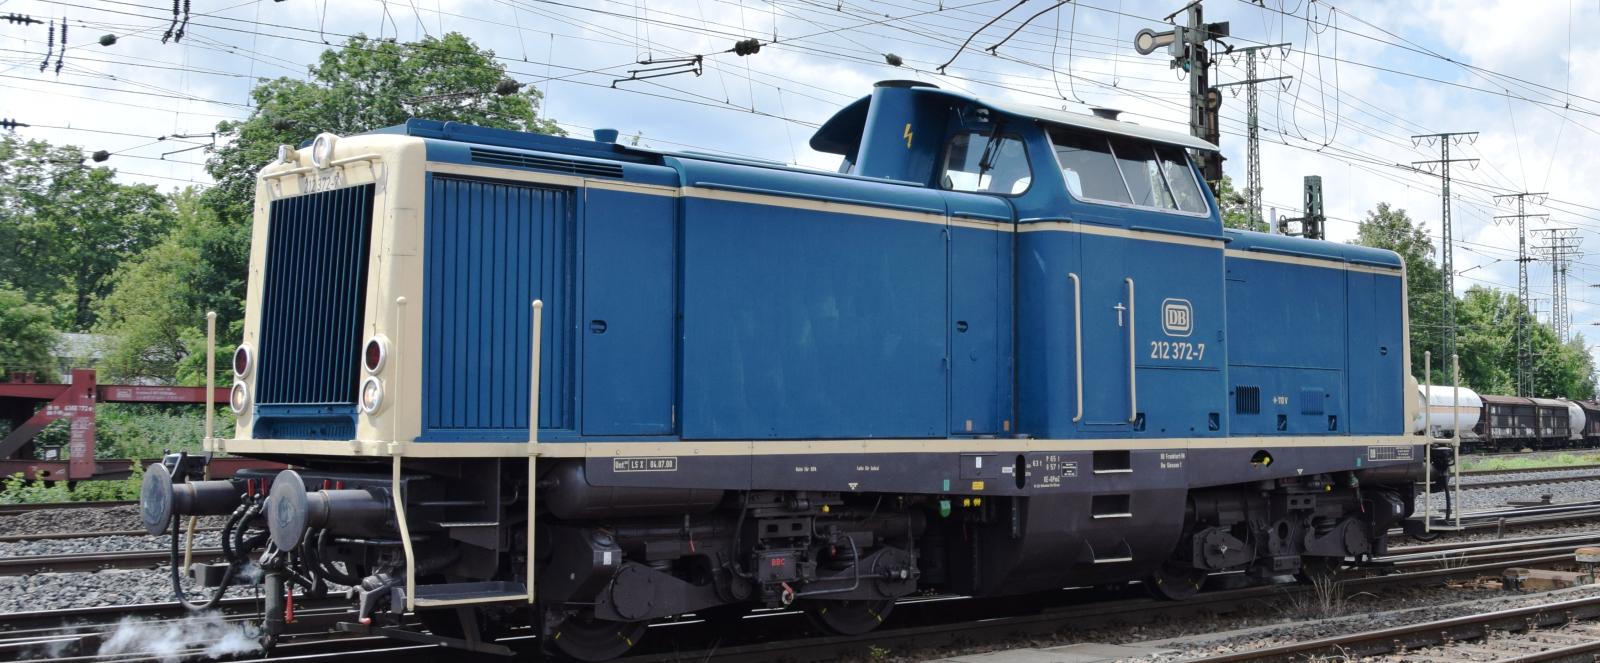 212 372 in Bundesbahn livery in June 2015 in Koblenz-Lützel